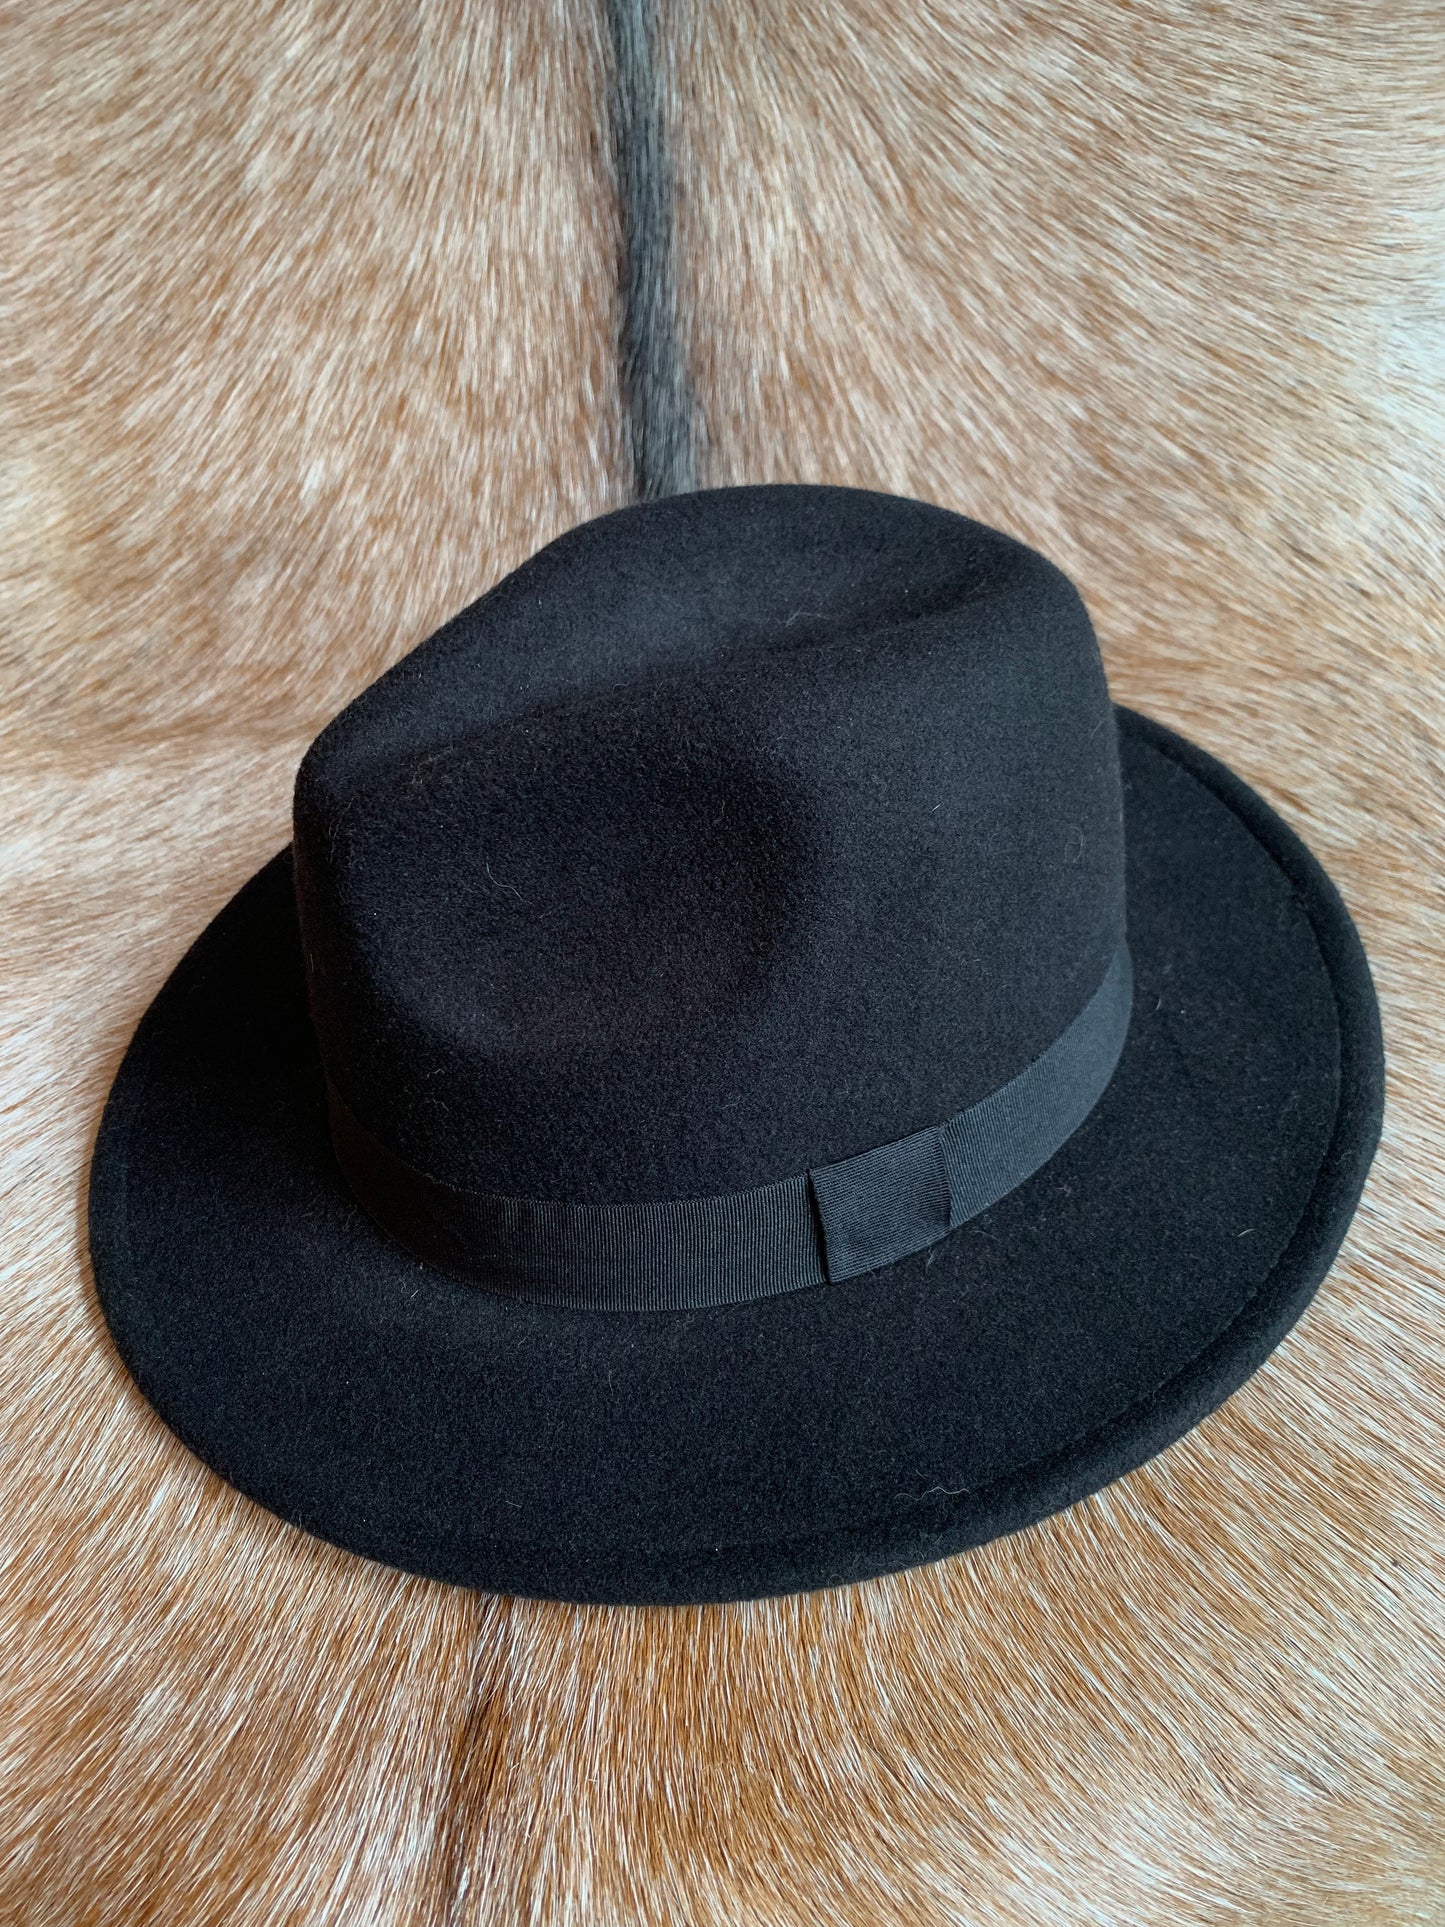 Black Wide Brimmed Fedora Hat